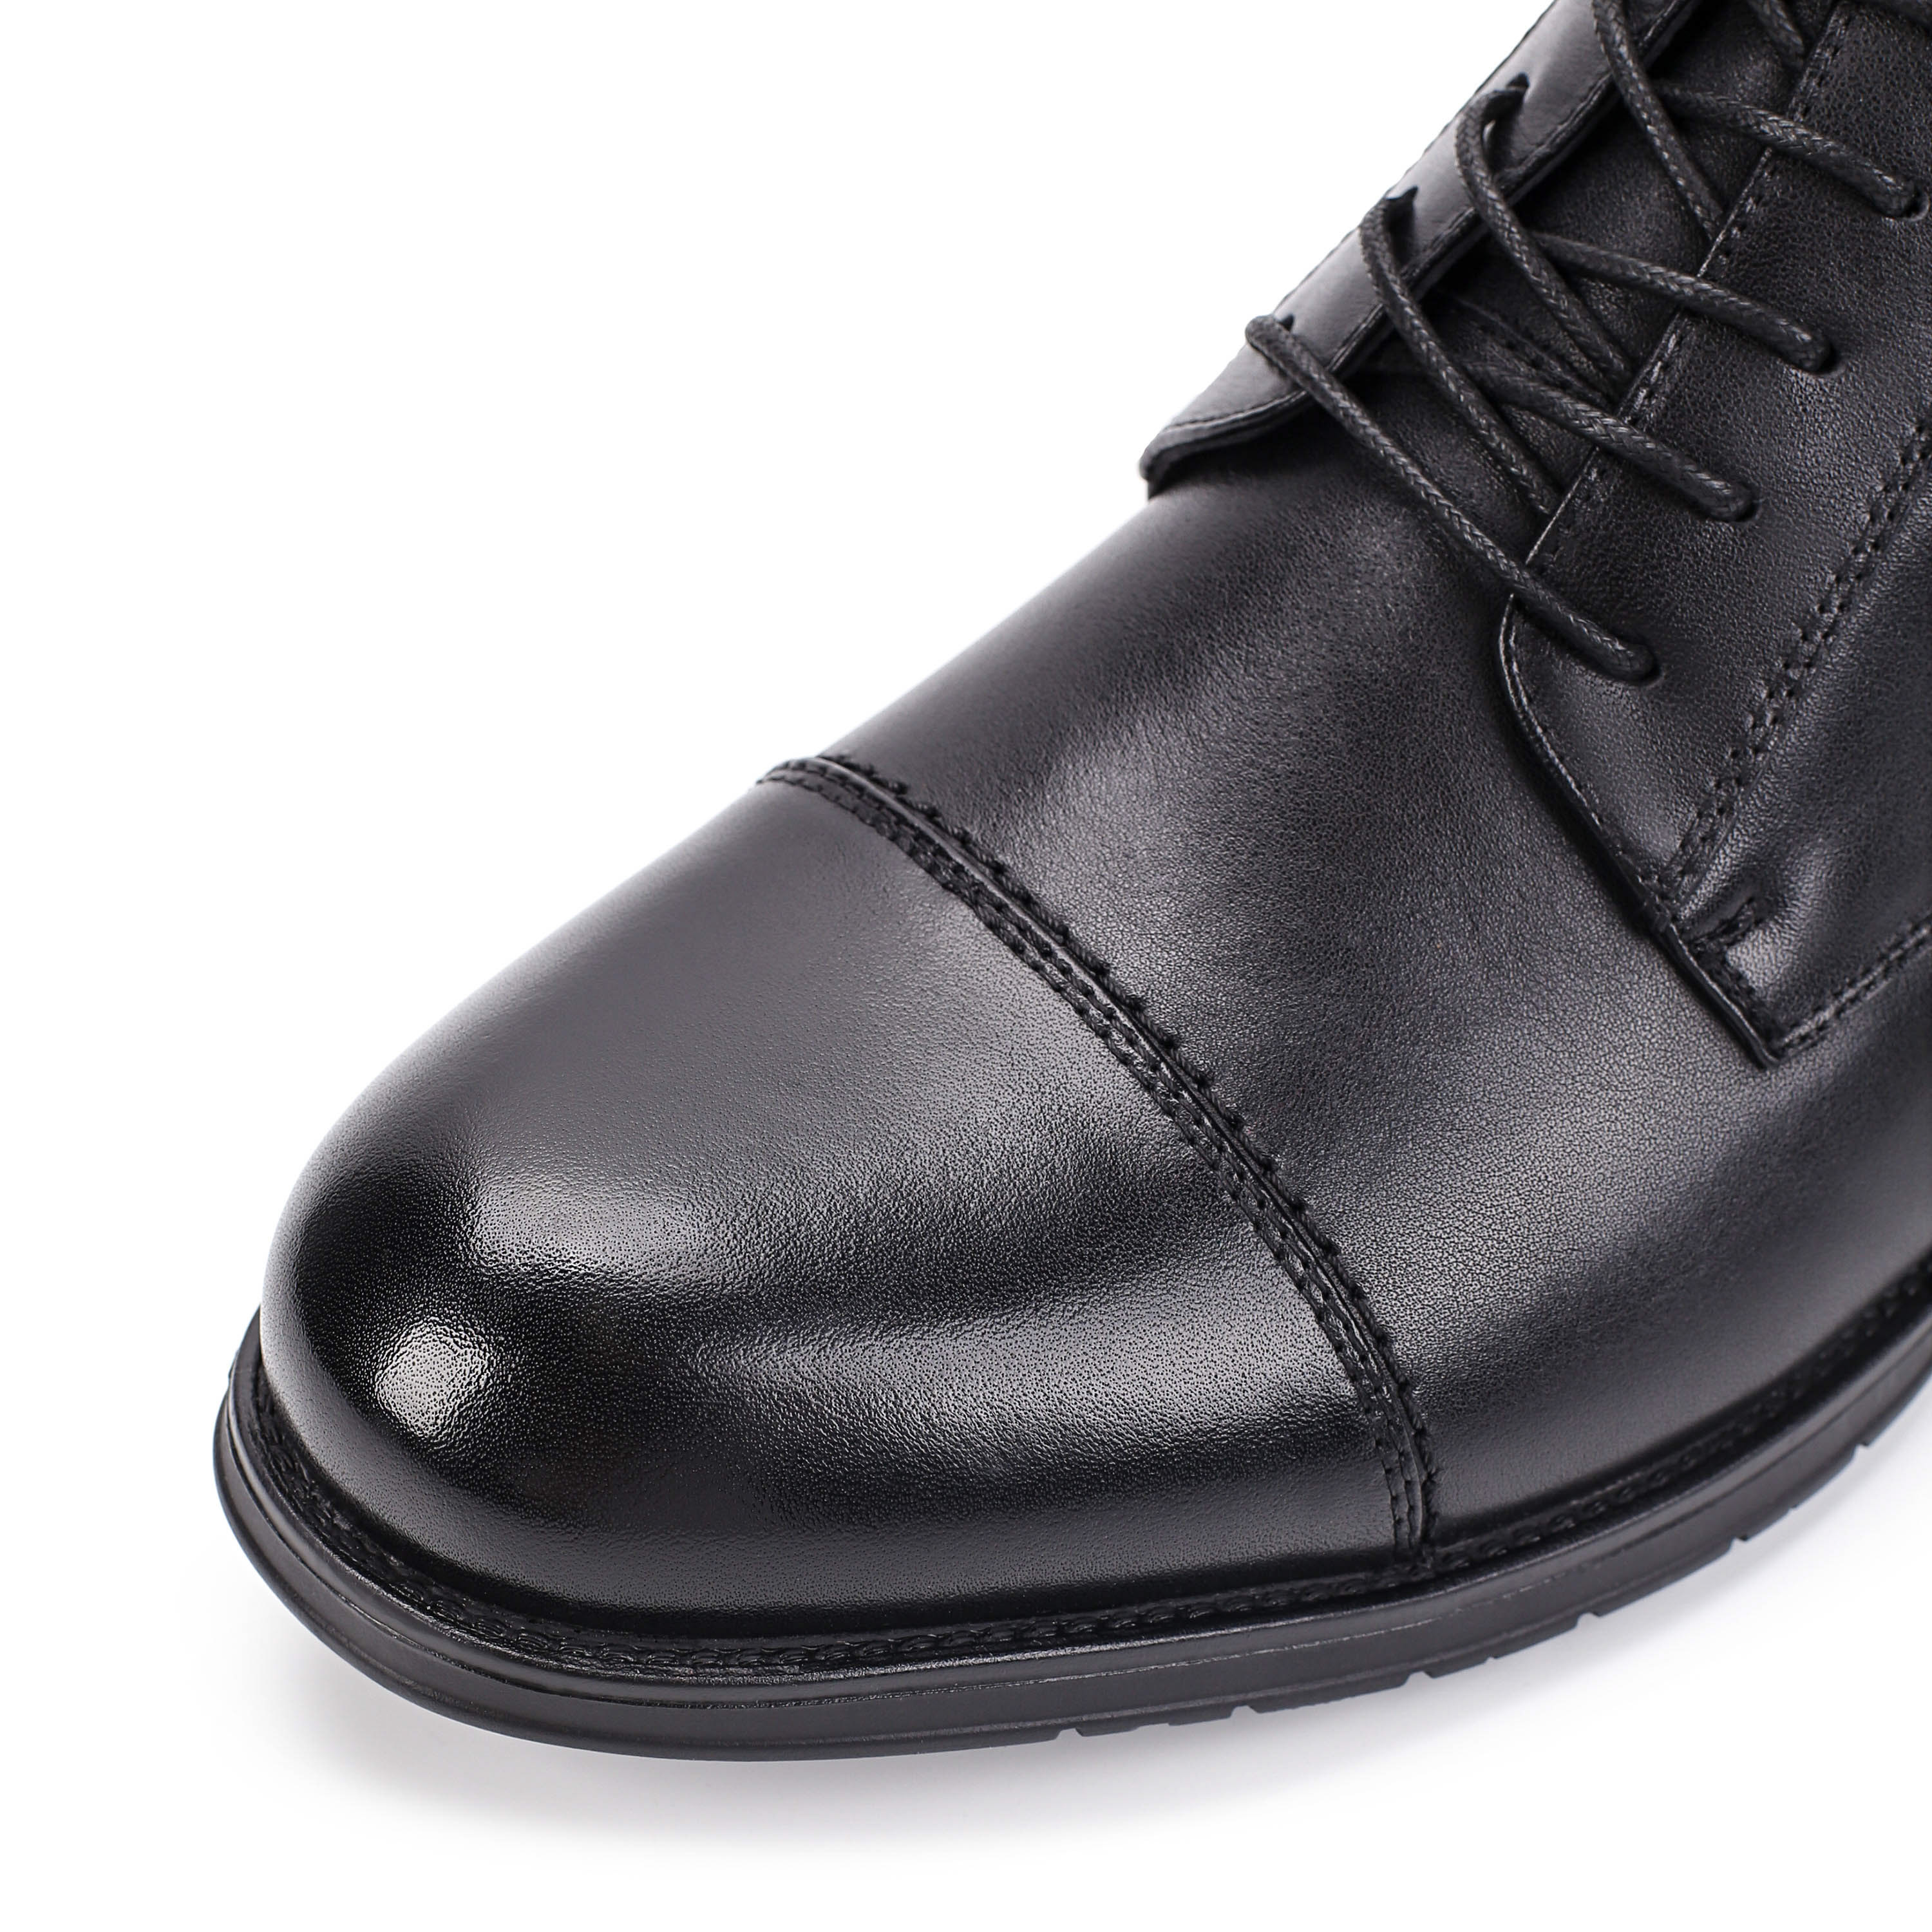 Ботинки Thomas Munz 104-140A-2102 104-140A-2102, цвет черный, размер 45 дерби - фото 6